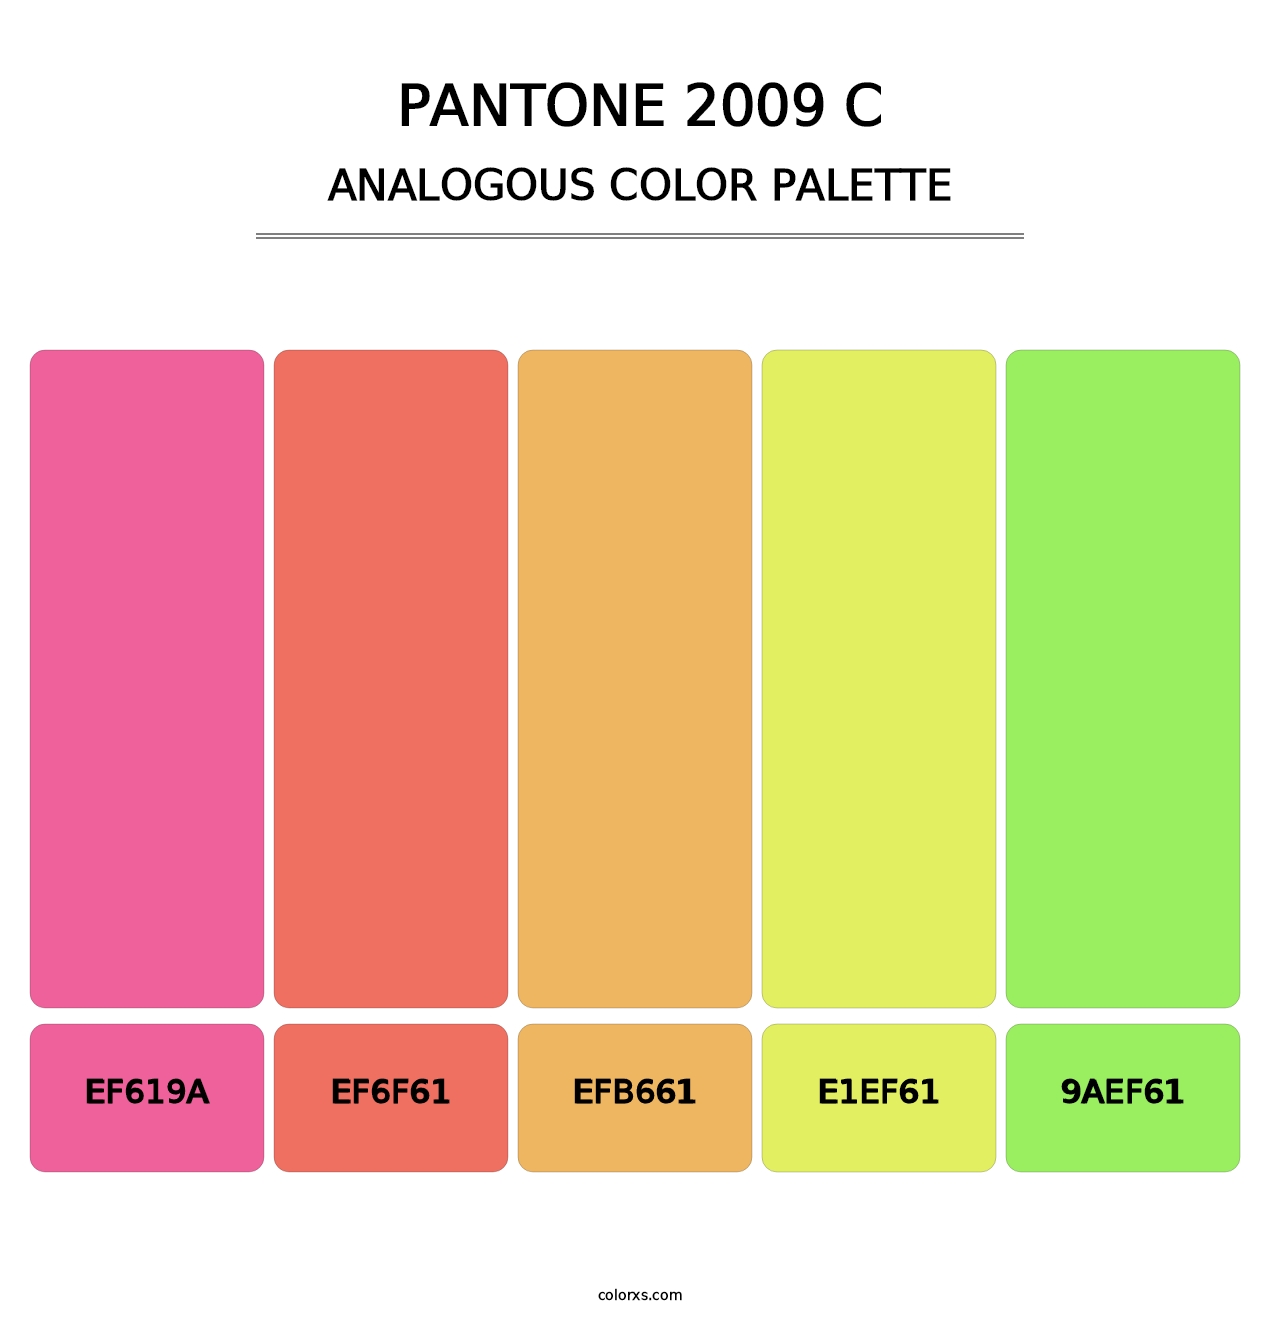 PANTONE 2009 C - Analogous Color Palette